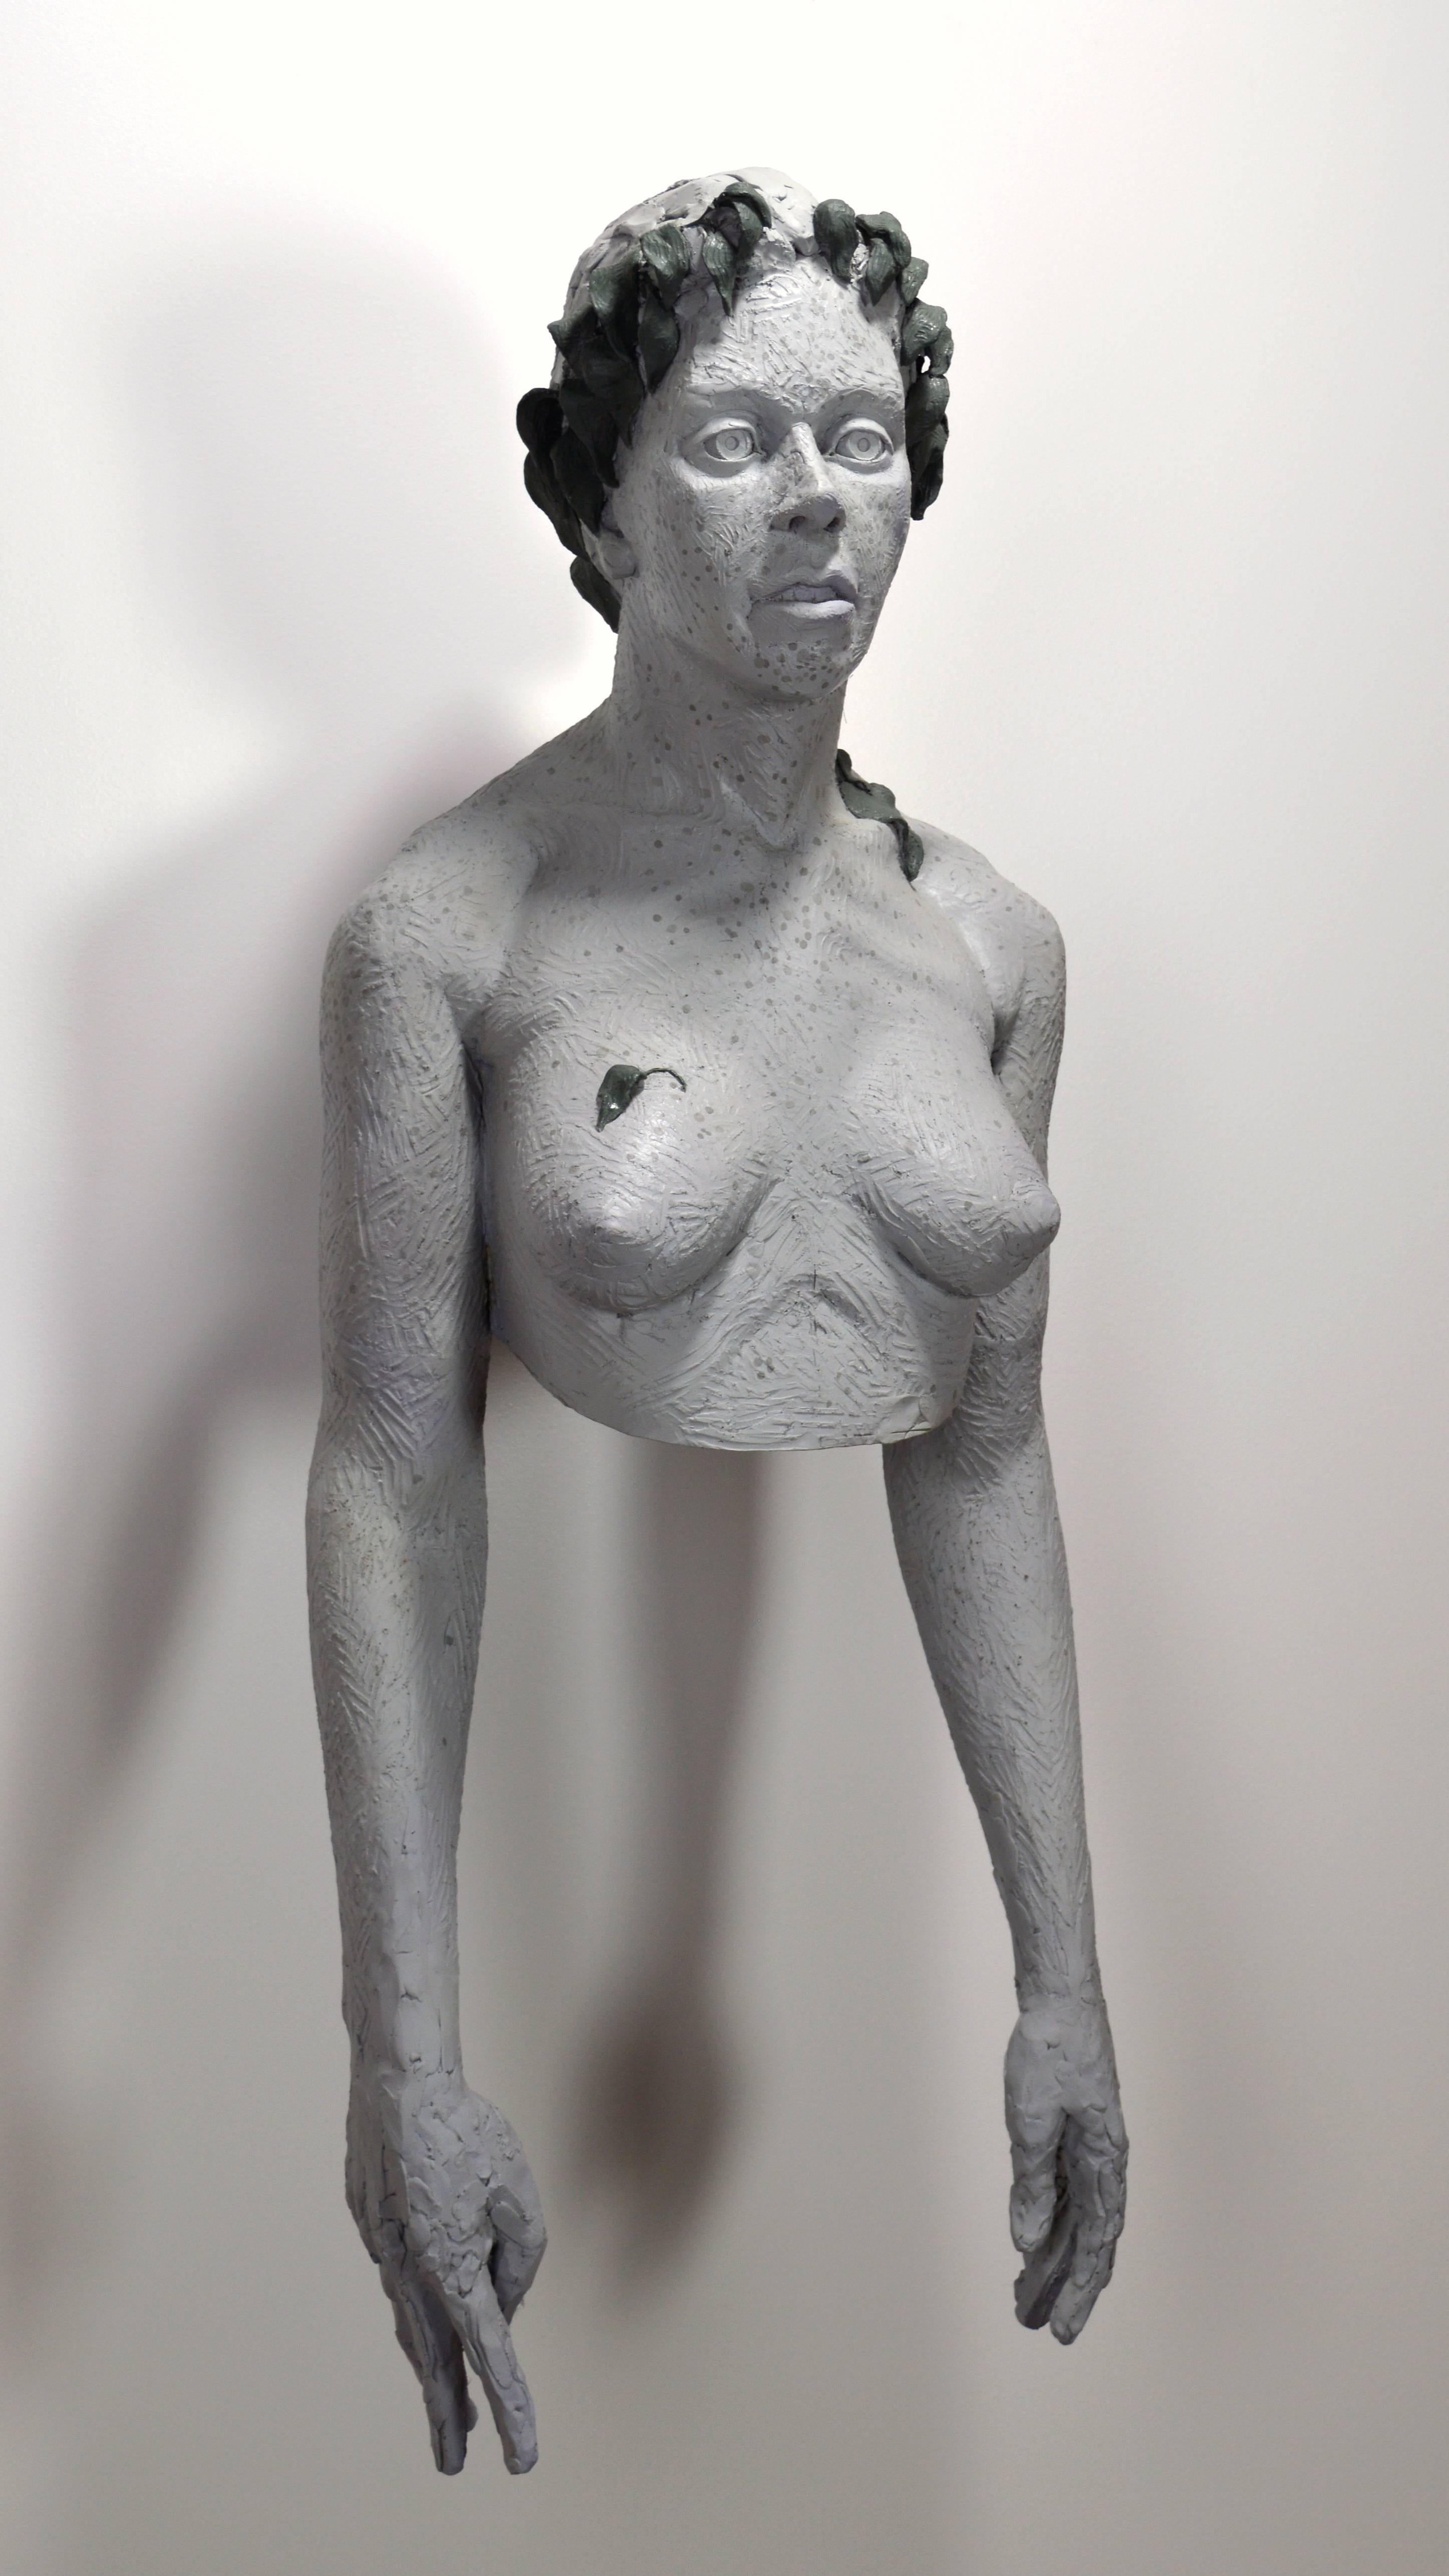 Ausgefallene lebensgroße Wandskulptur eines nackten weiblichen Torsos und Kopfes. Diese Skulptur ist Teil seiner Serie 